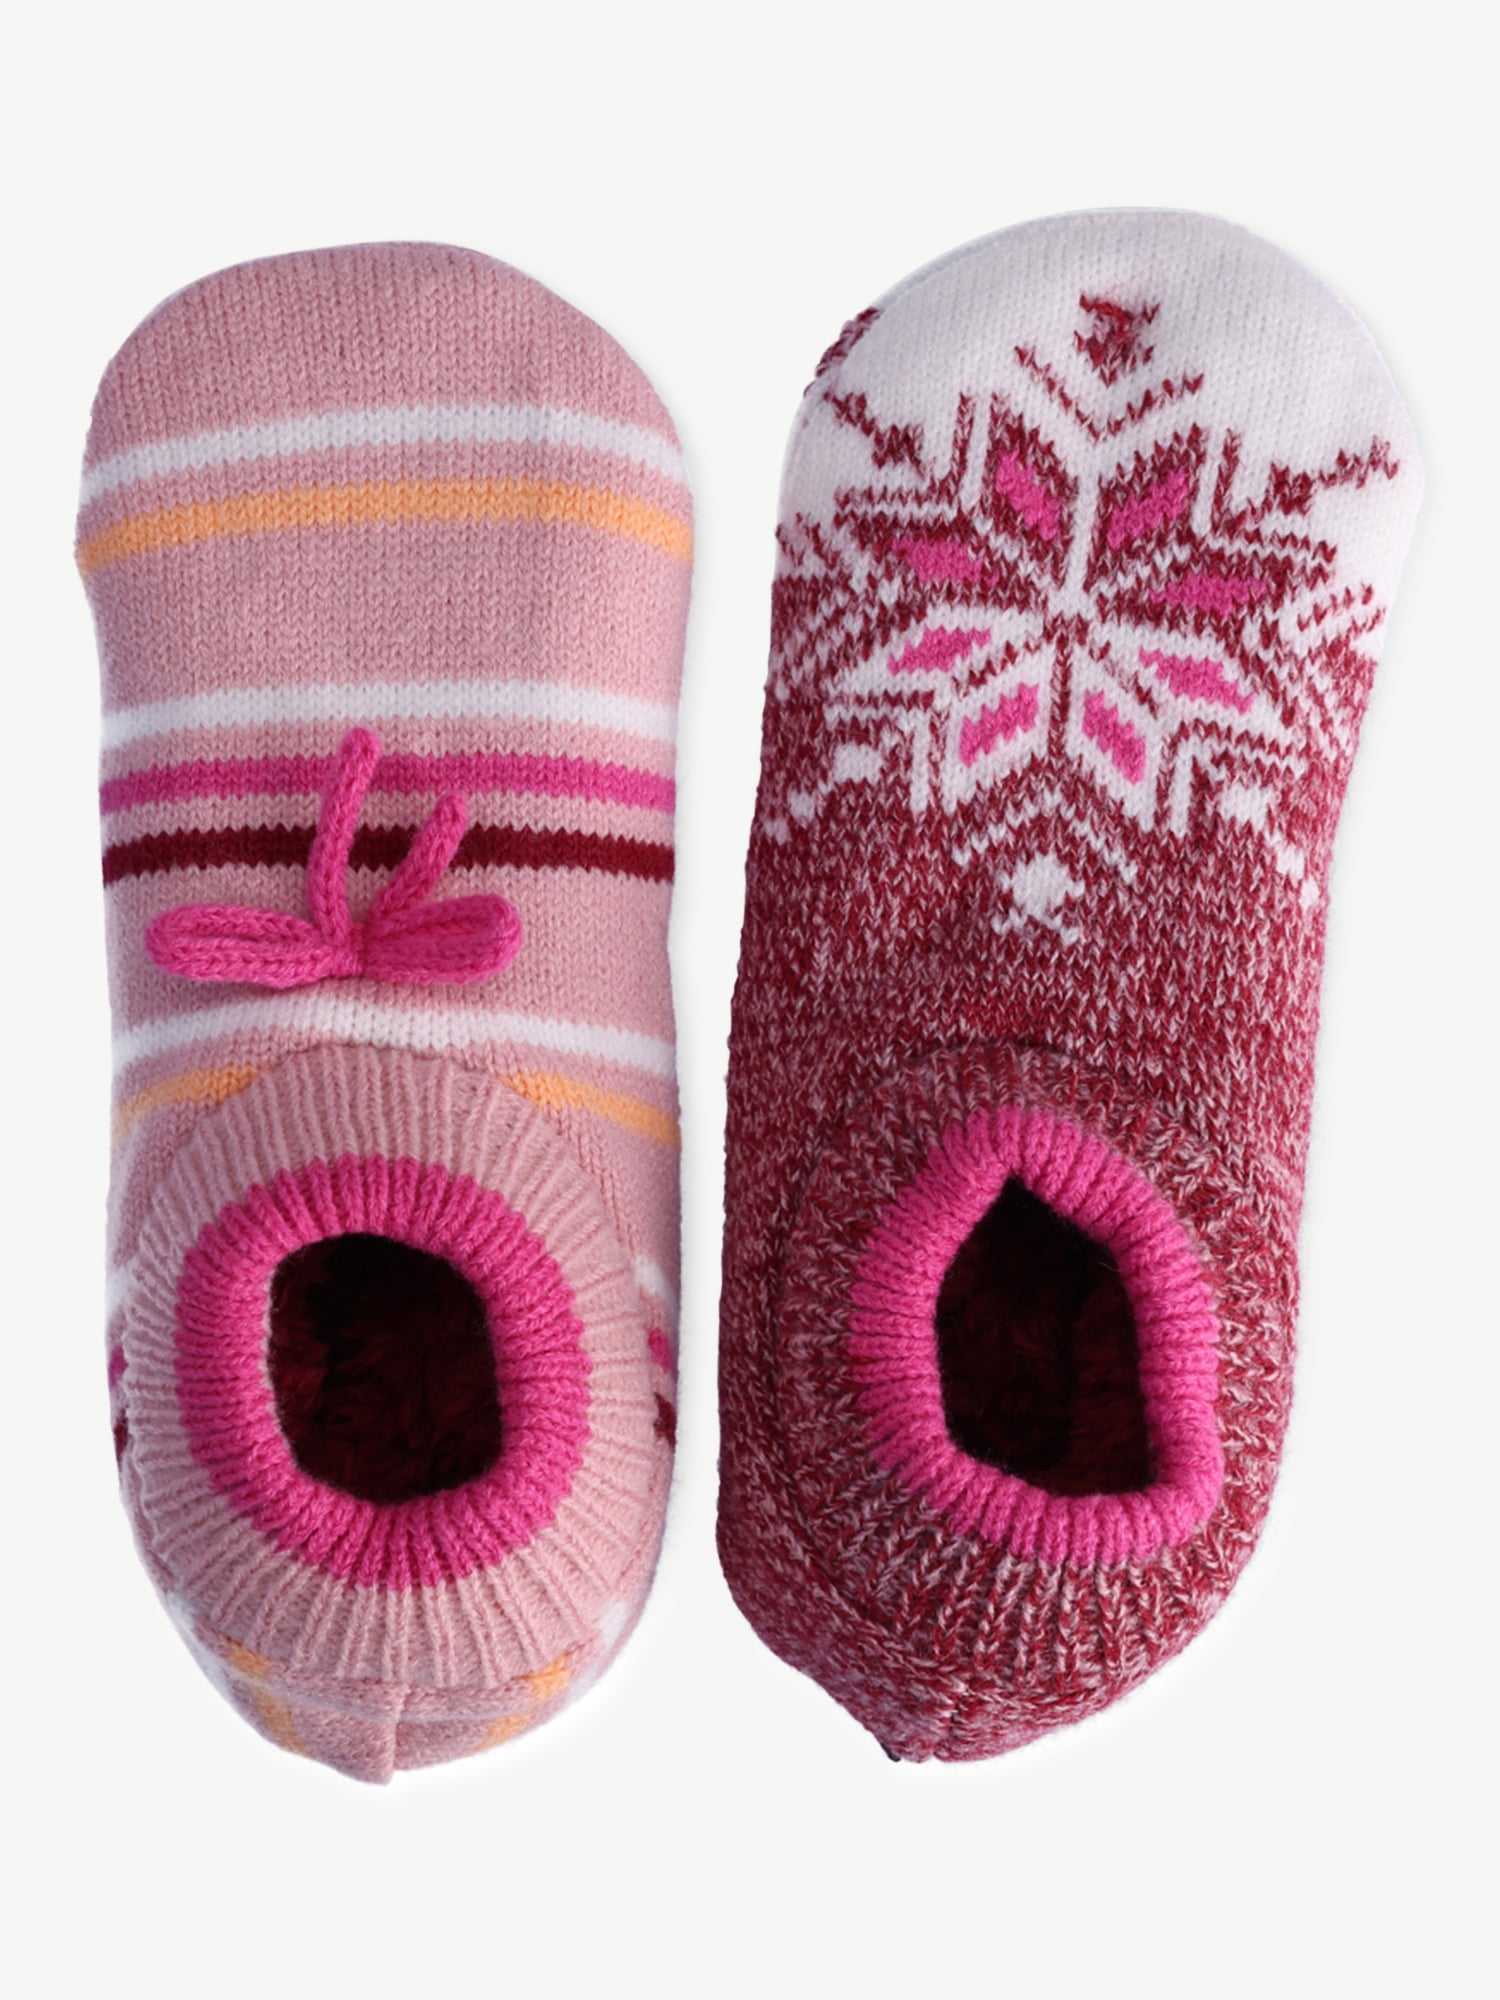 Joyspun Women's Knit Slipper Socks, 2-Pack, Size 4-10 